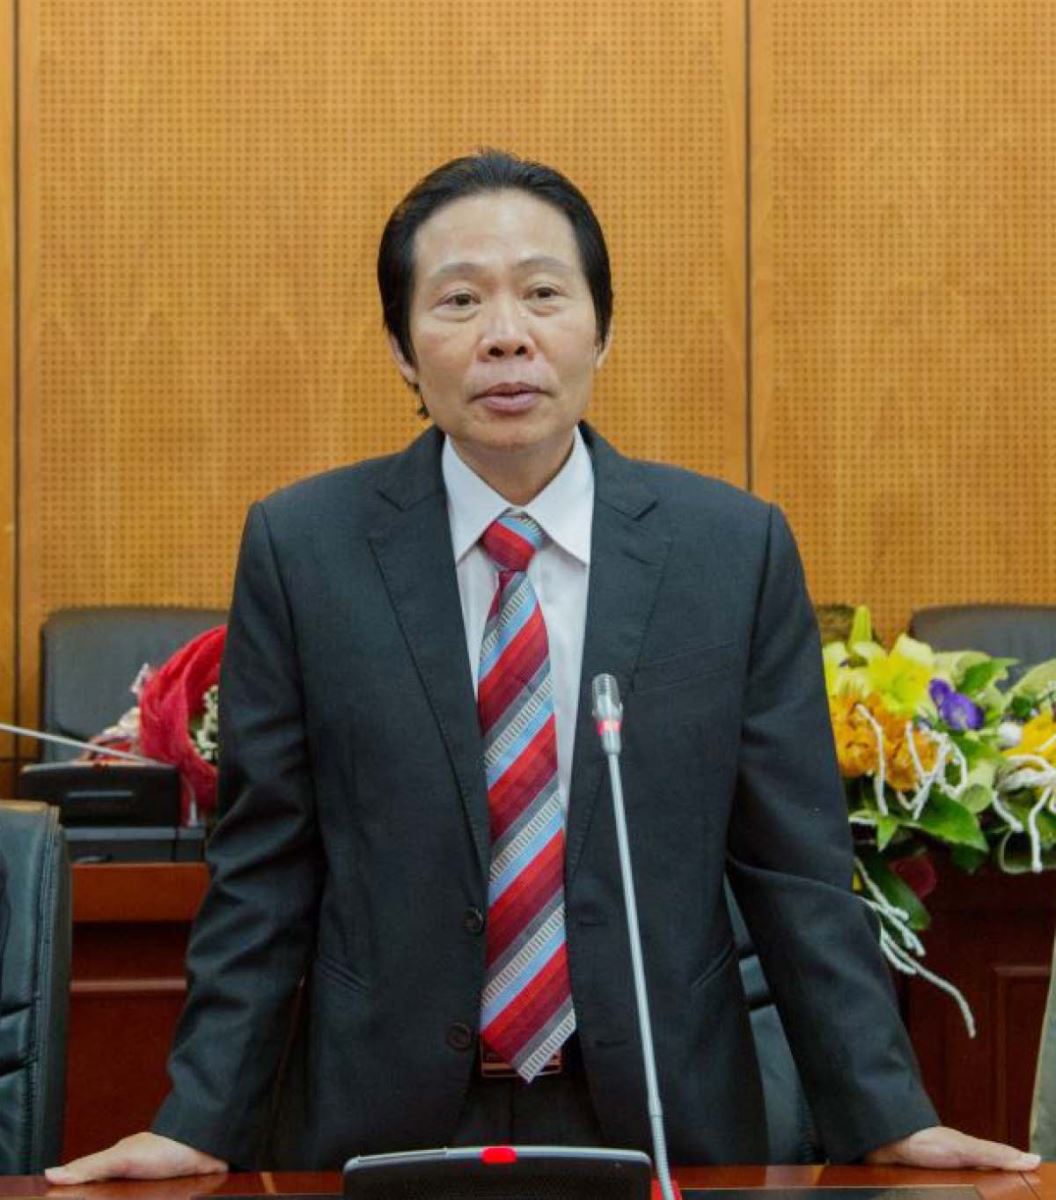 Tiến sĩ Tạ Ngọc Hải, Phó Viện trưởng Viện Tổ chức khoa học Nhà nước (Bộ Nội vụ).